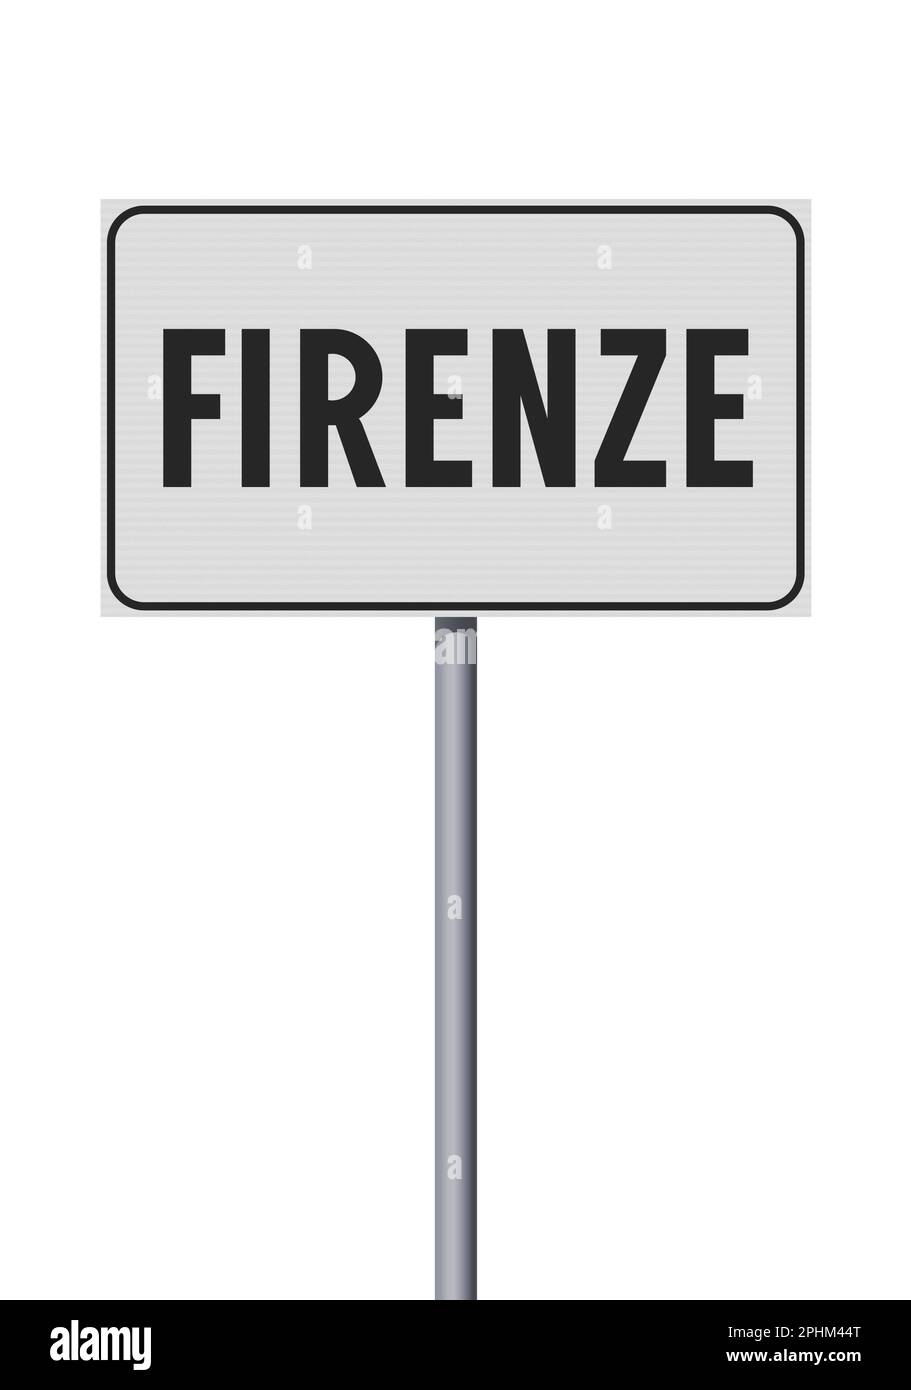 Illustration vectorielle de la ville de Florence, Italie (Firenze en italien) entrée panneau blanc sur poteau métallique Illustration de Vecteur